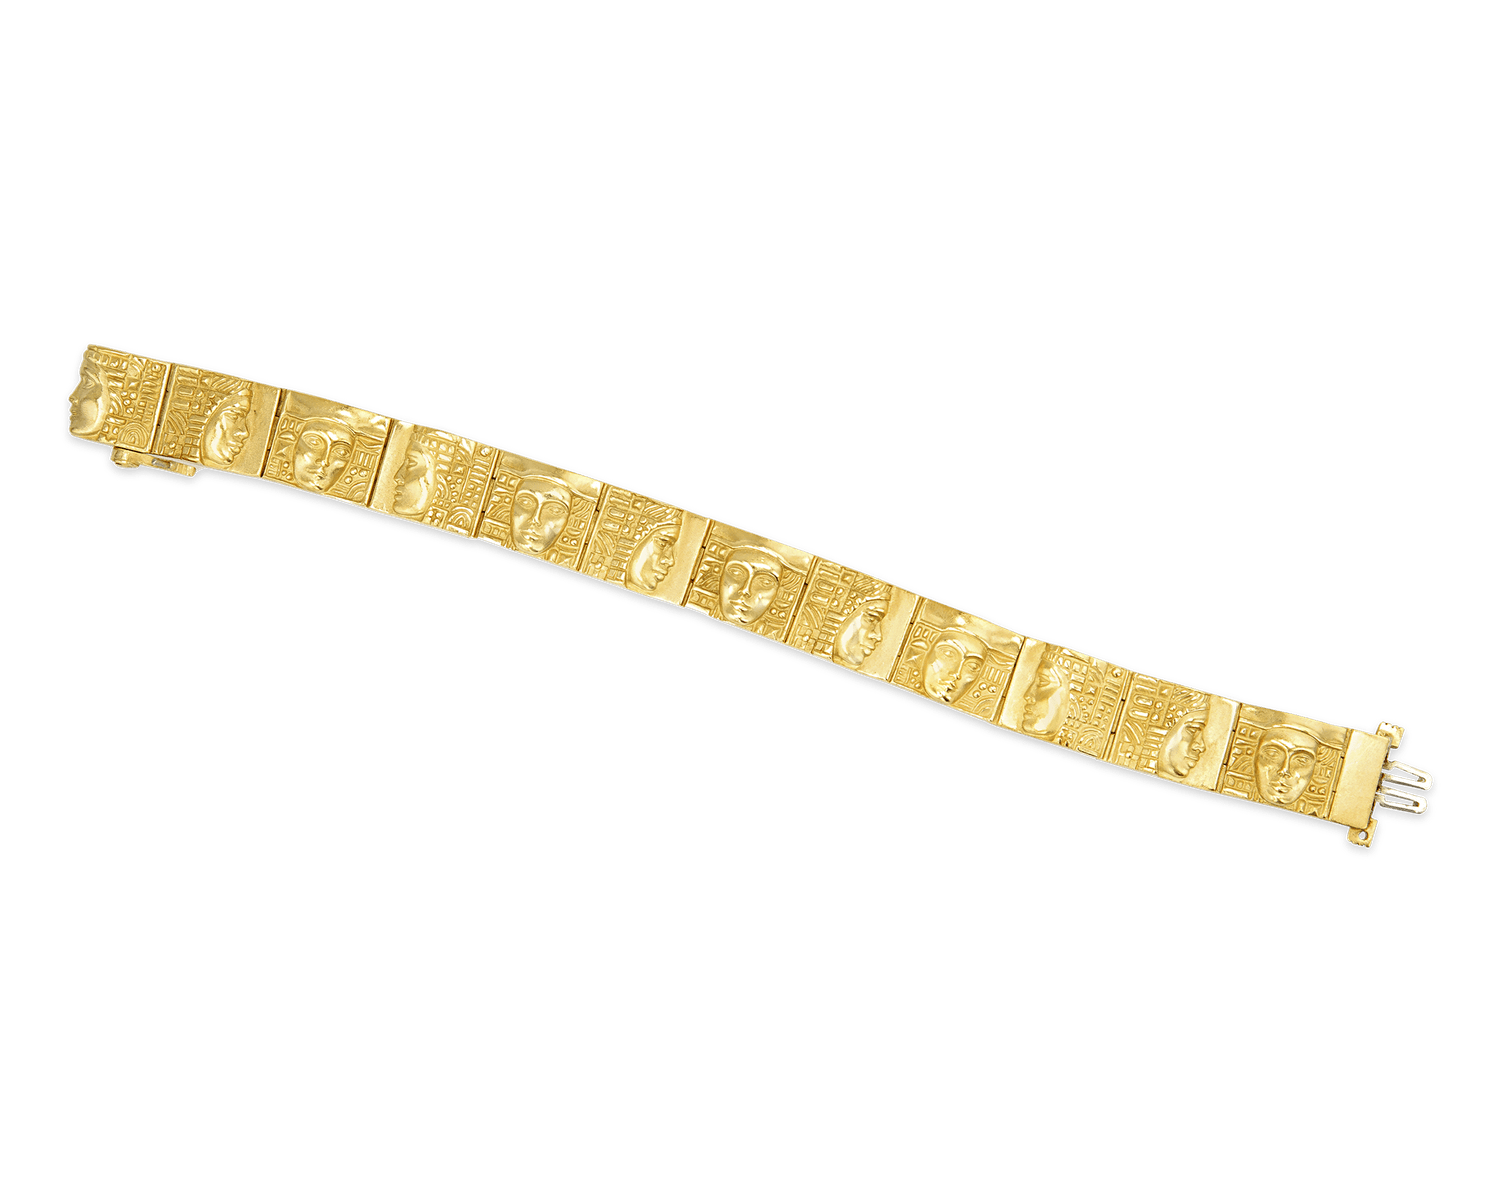 Gold Central American Motif Bracelet by Kieselstein-Cord